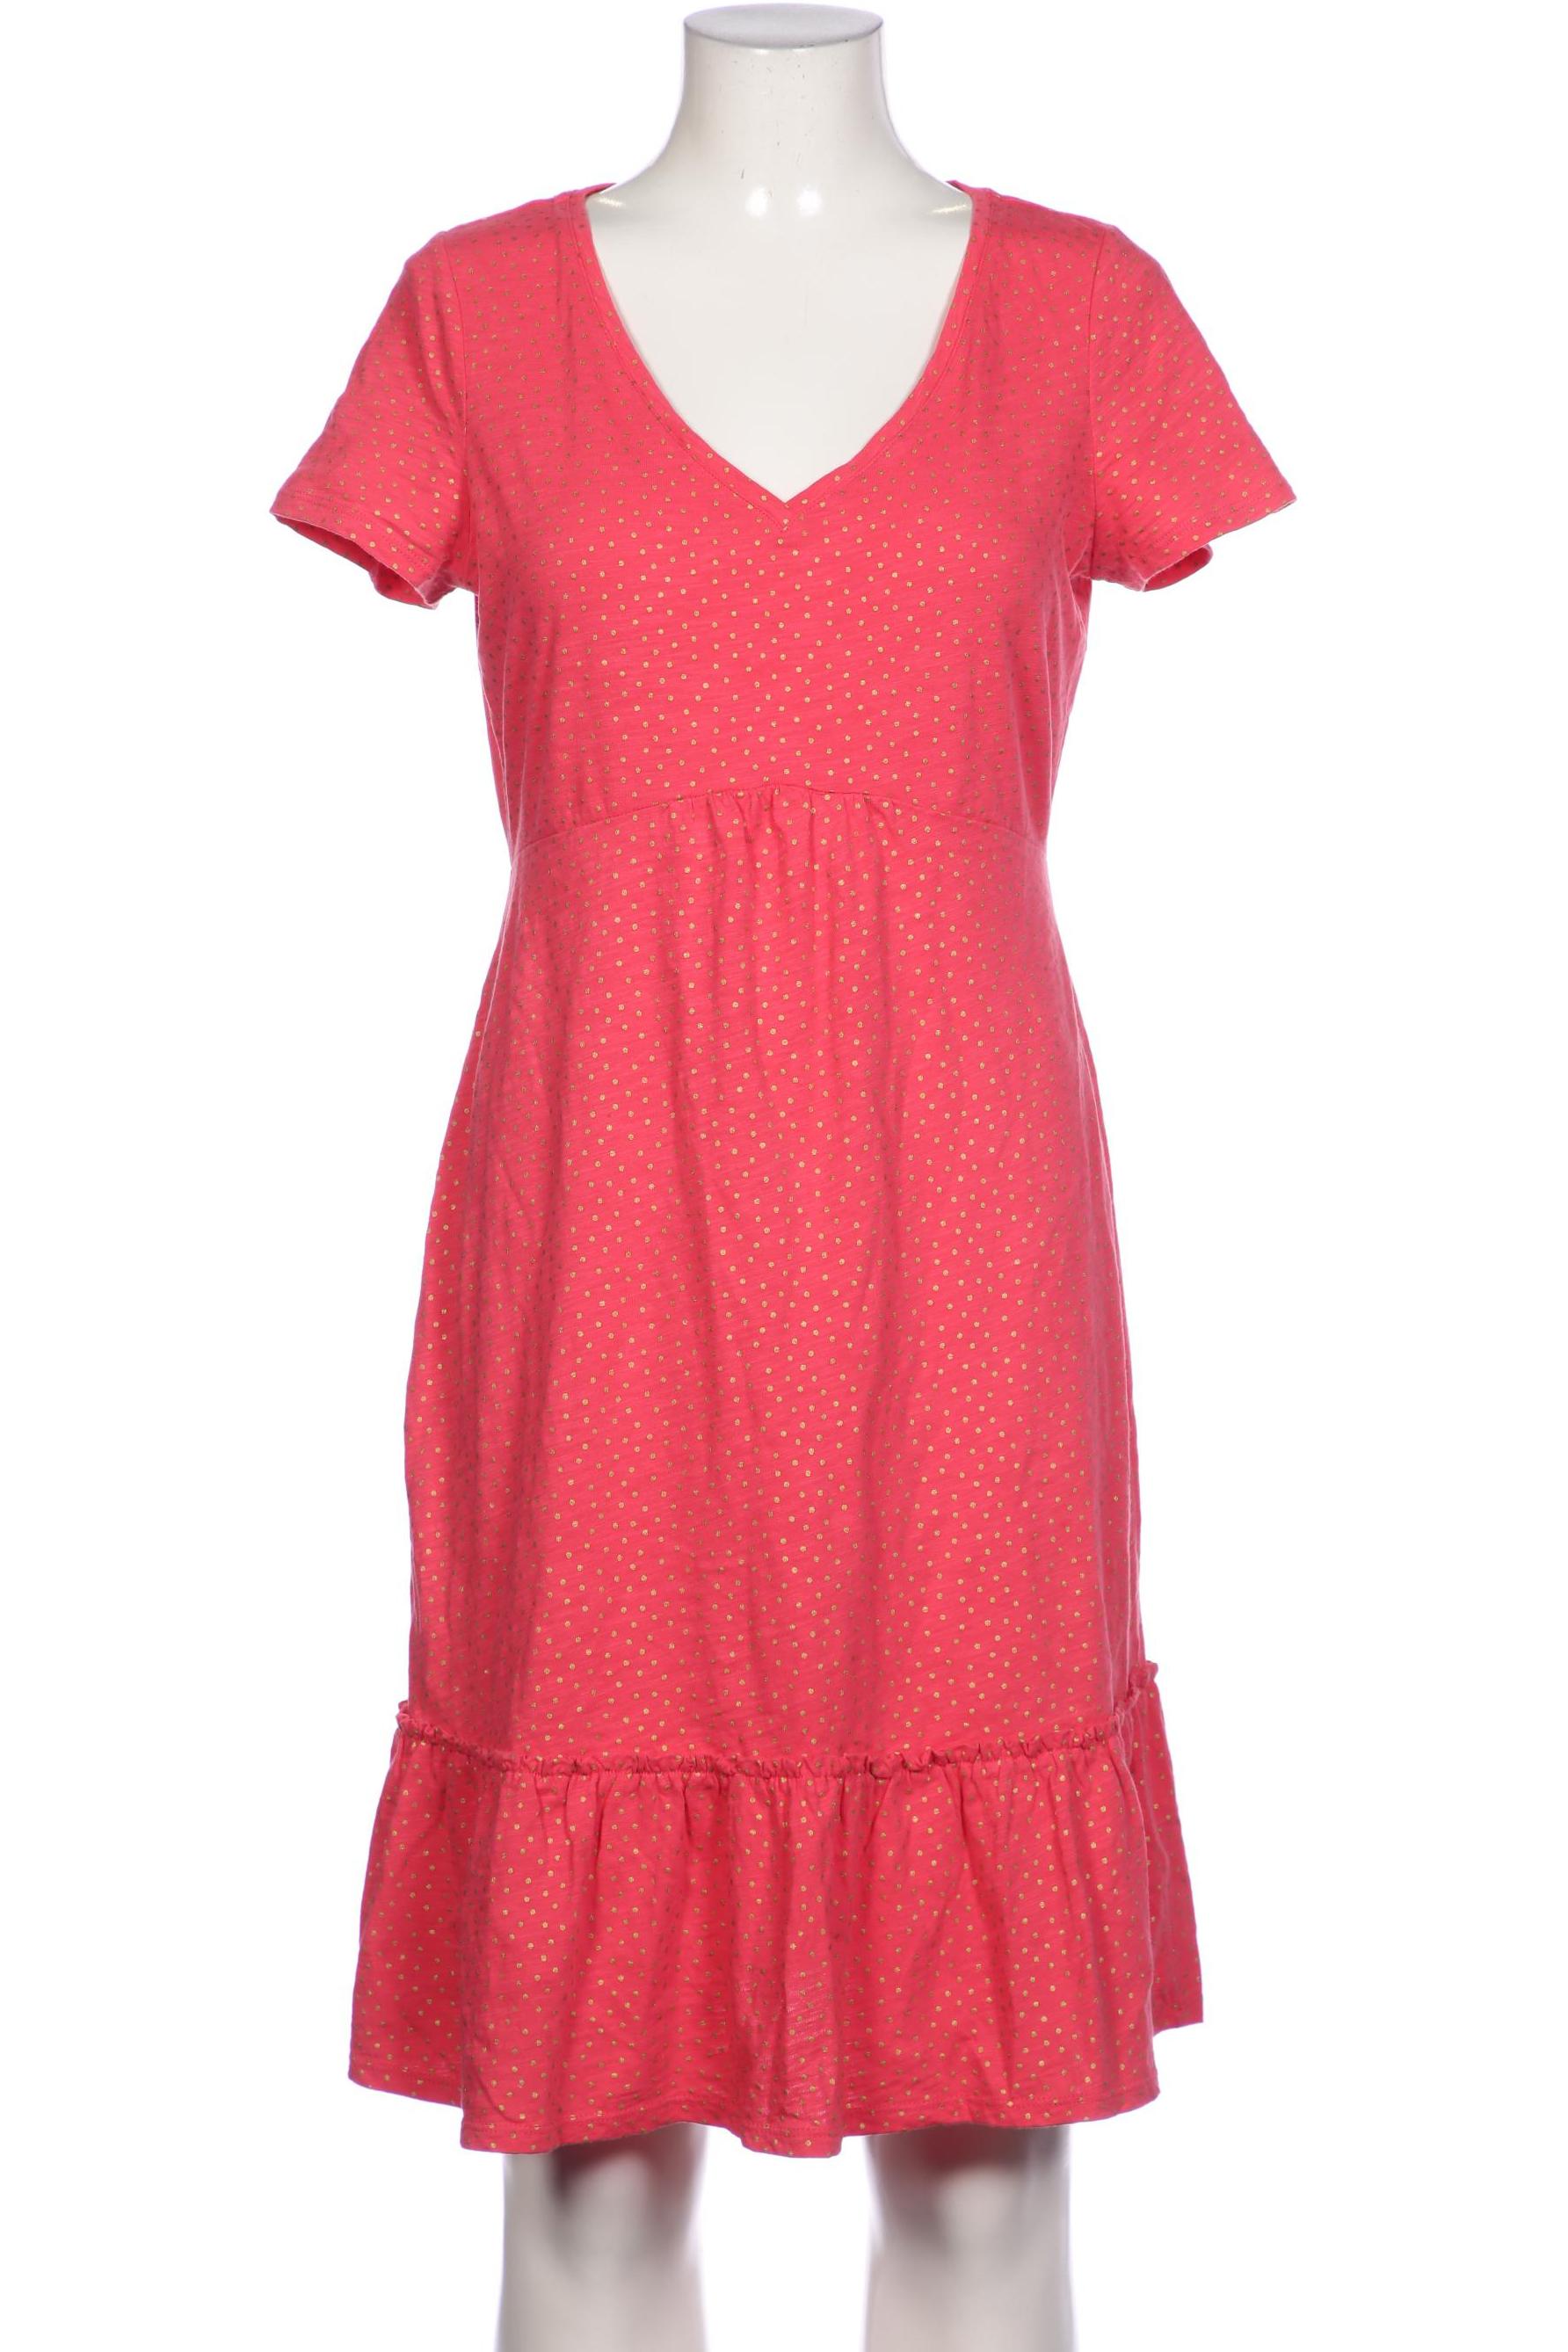 Boden Damen Kleid, pink, Gr. 38 von Boden